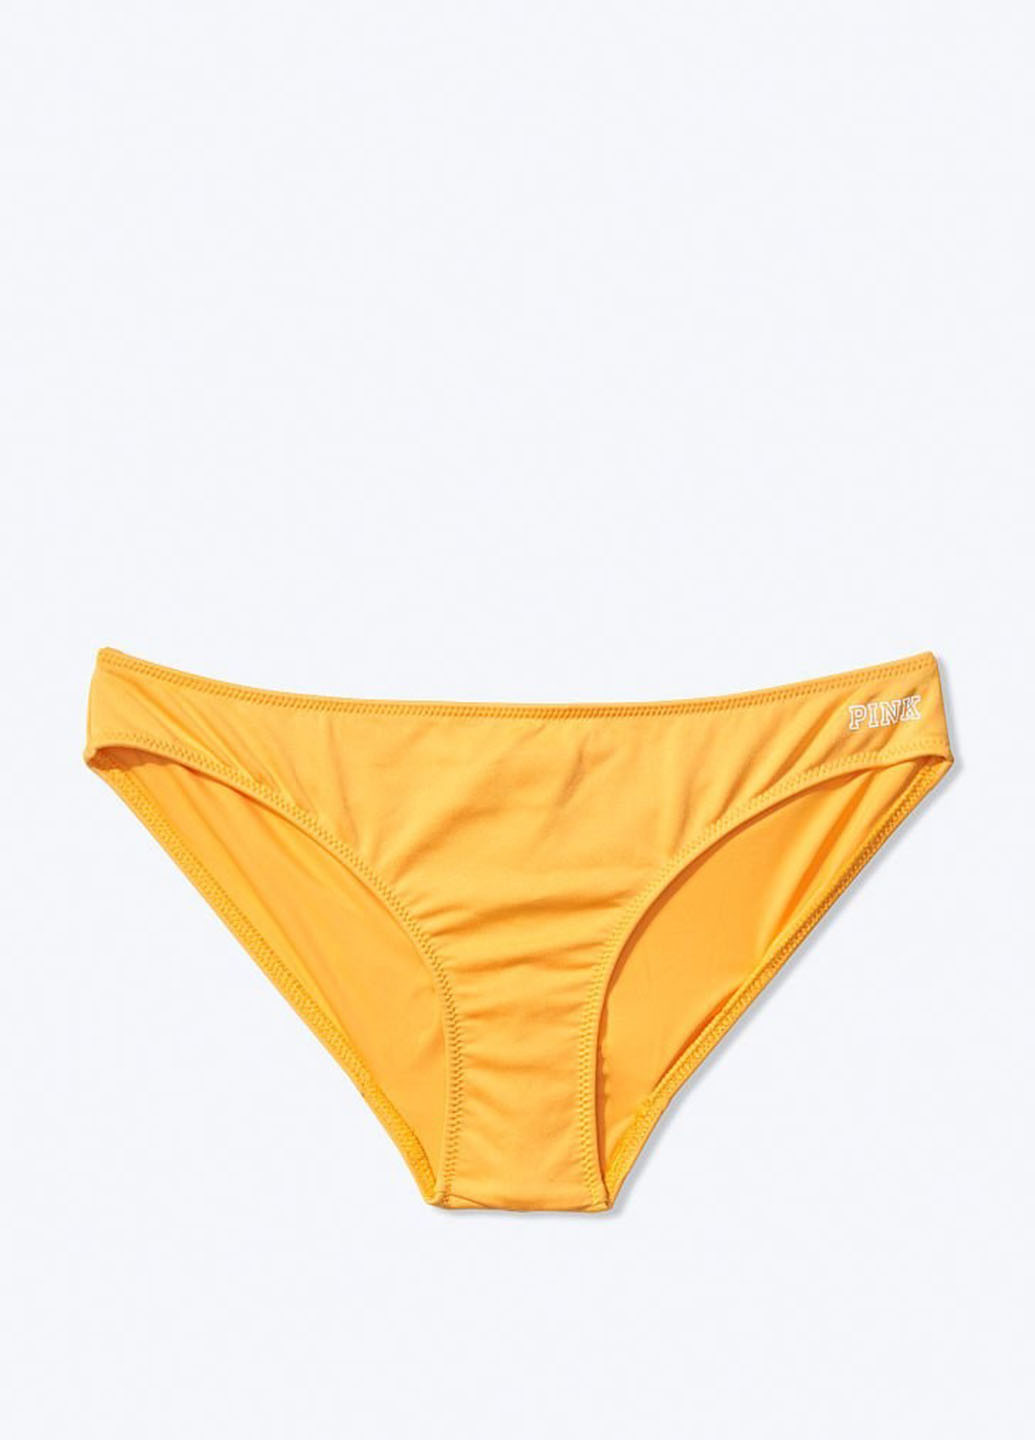 Купальні трусики Victoria's Secret бікіні однотонні жовті пляжні поліестер